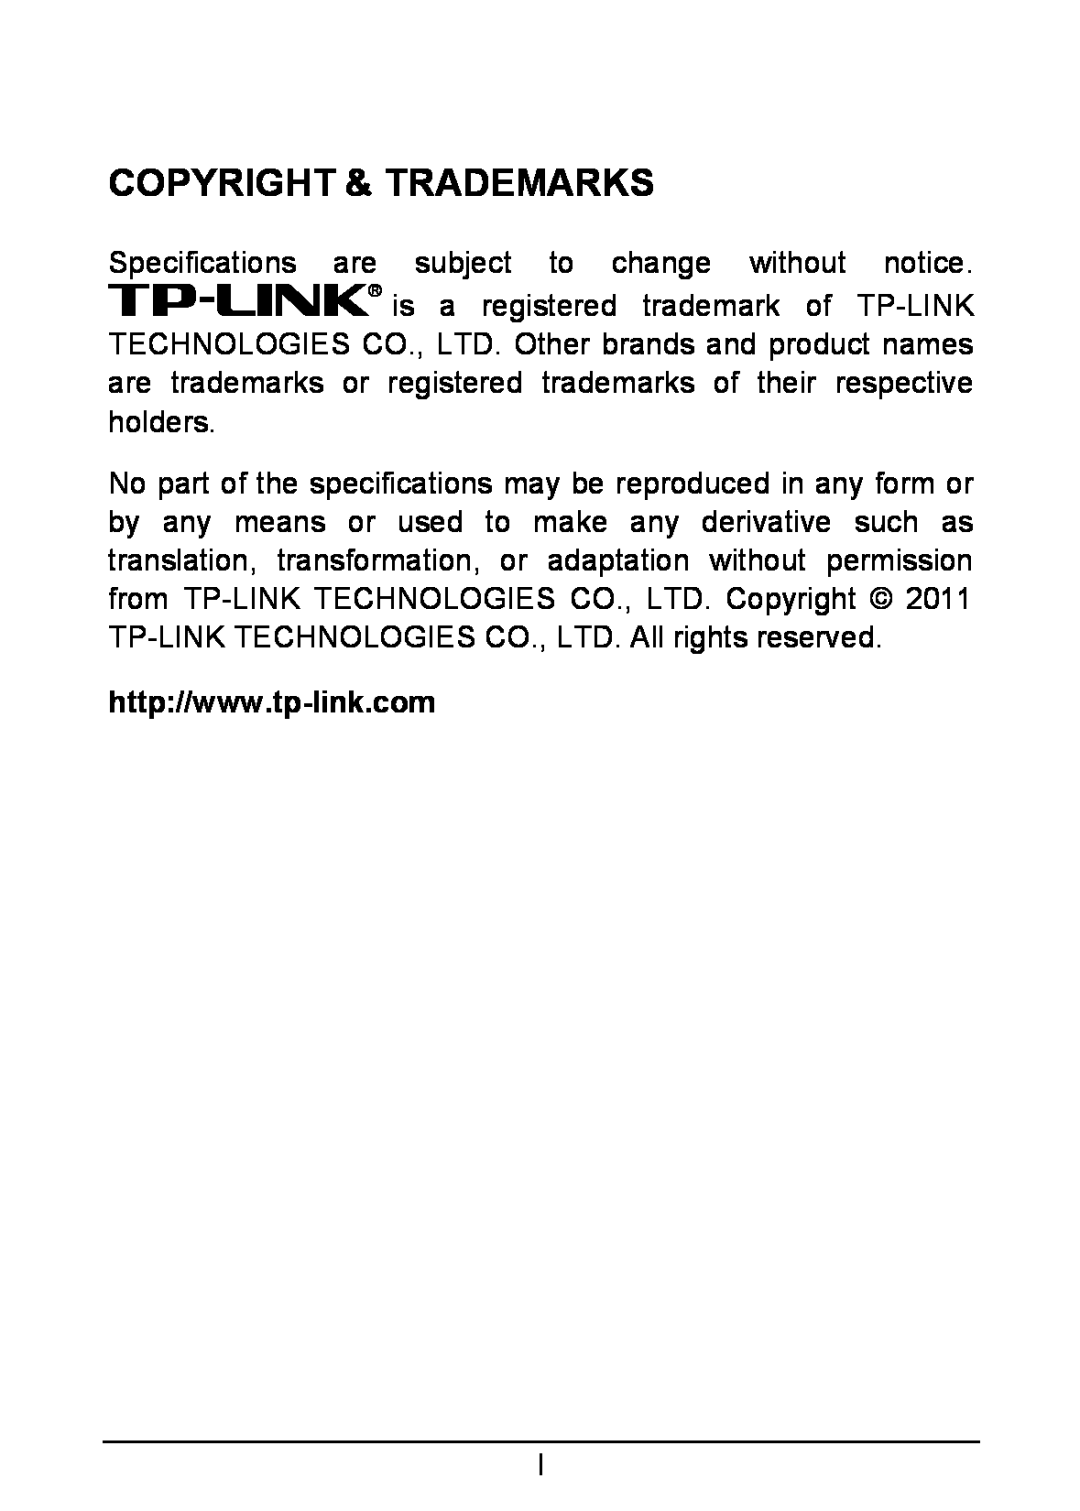 TP-Link TL-SG1005D, TL-SG1008D Copyright & Trademarks, are trademarks or registered trademarks of their respective holders 